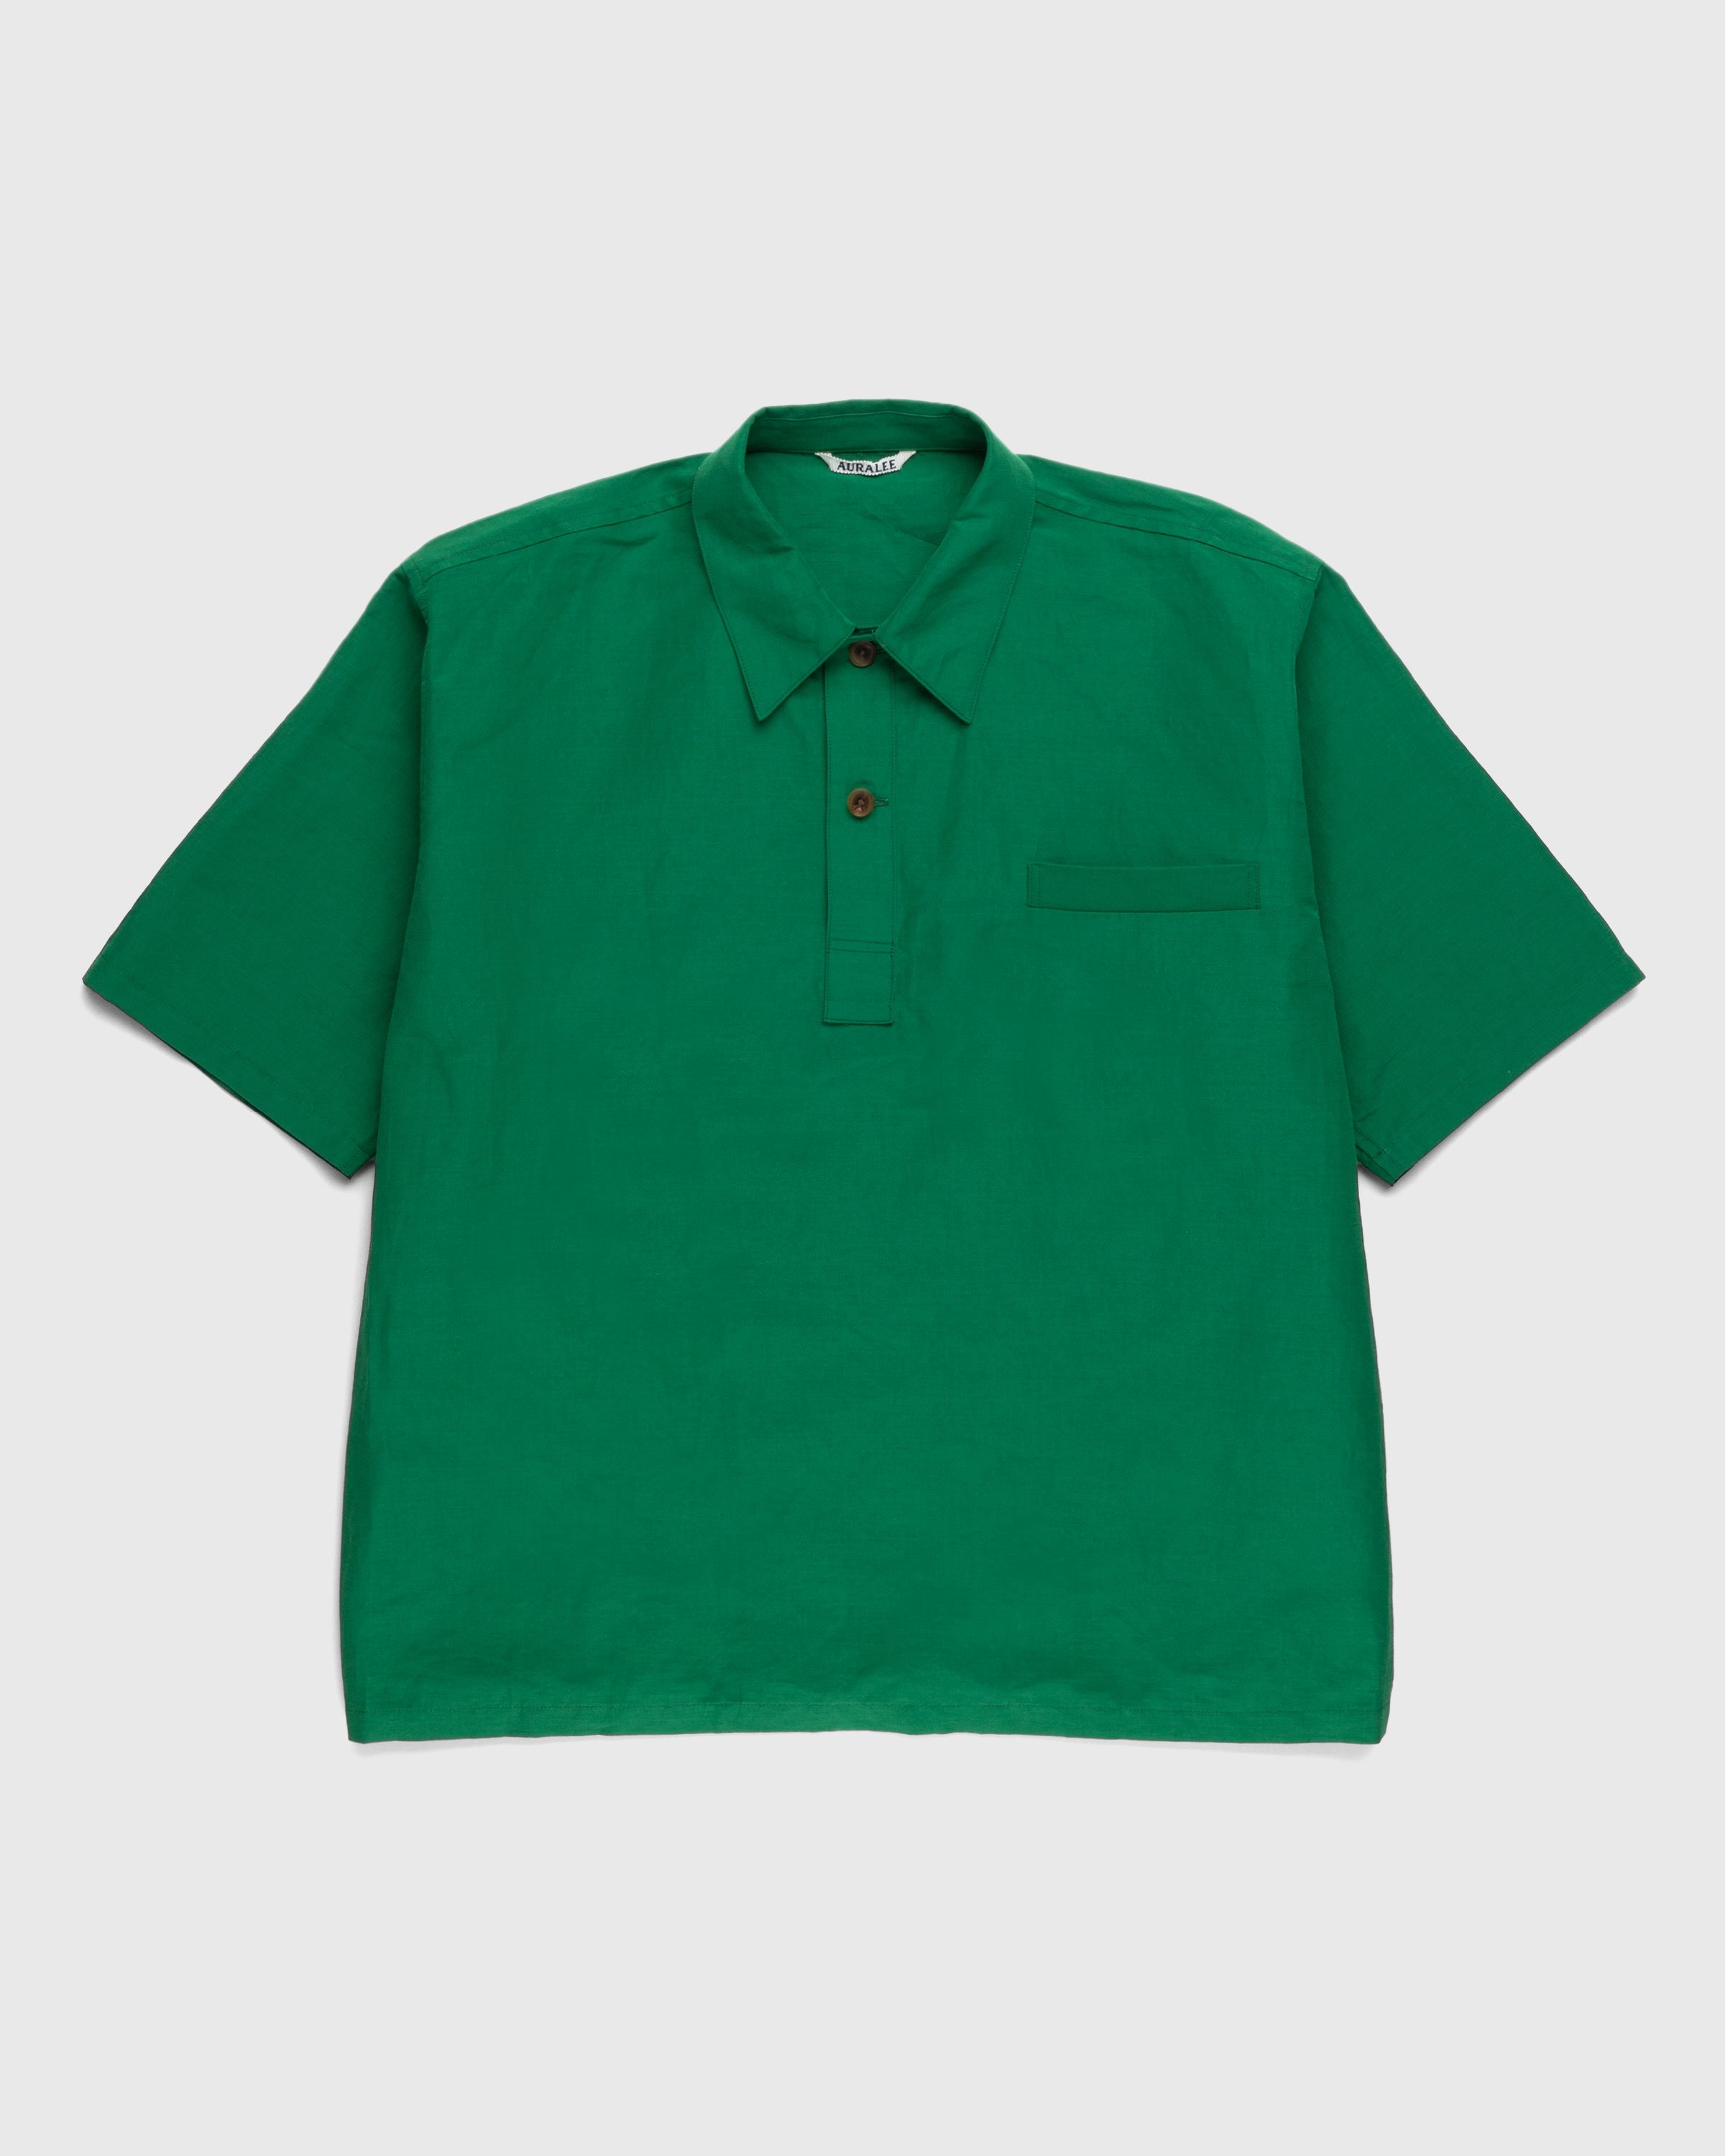 Auralee - High Density Finx Linen Weather Shirt Green - Clothing - Green - Image 1